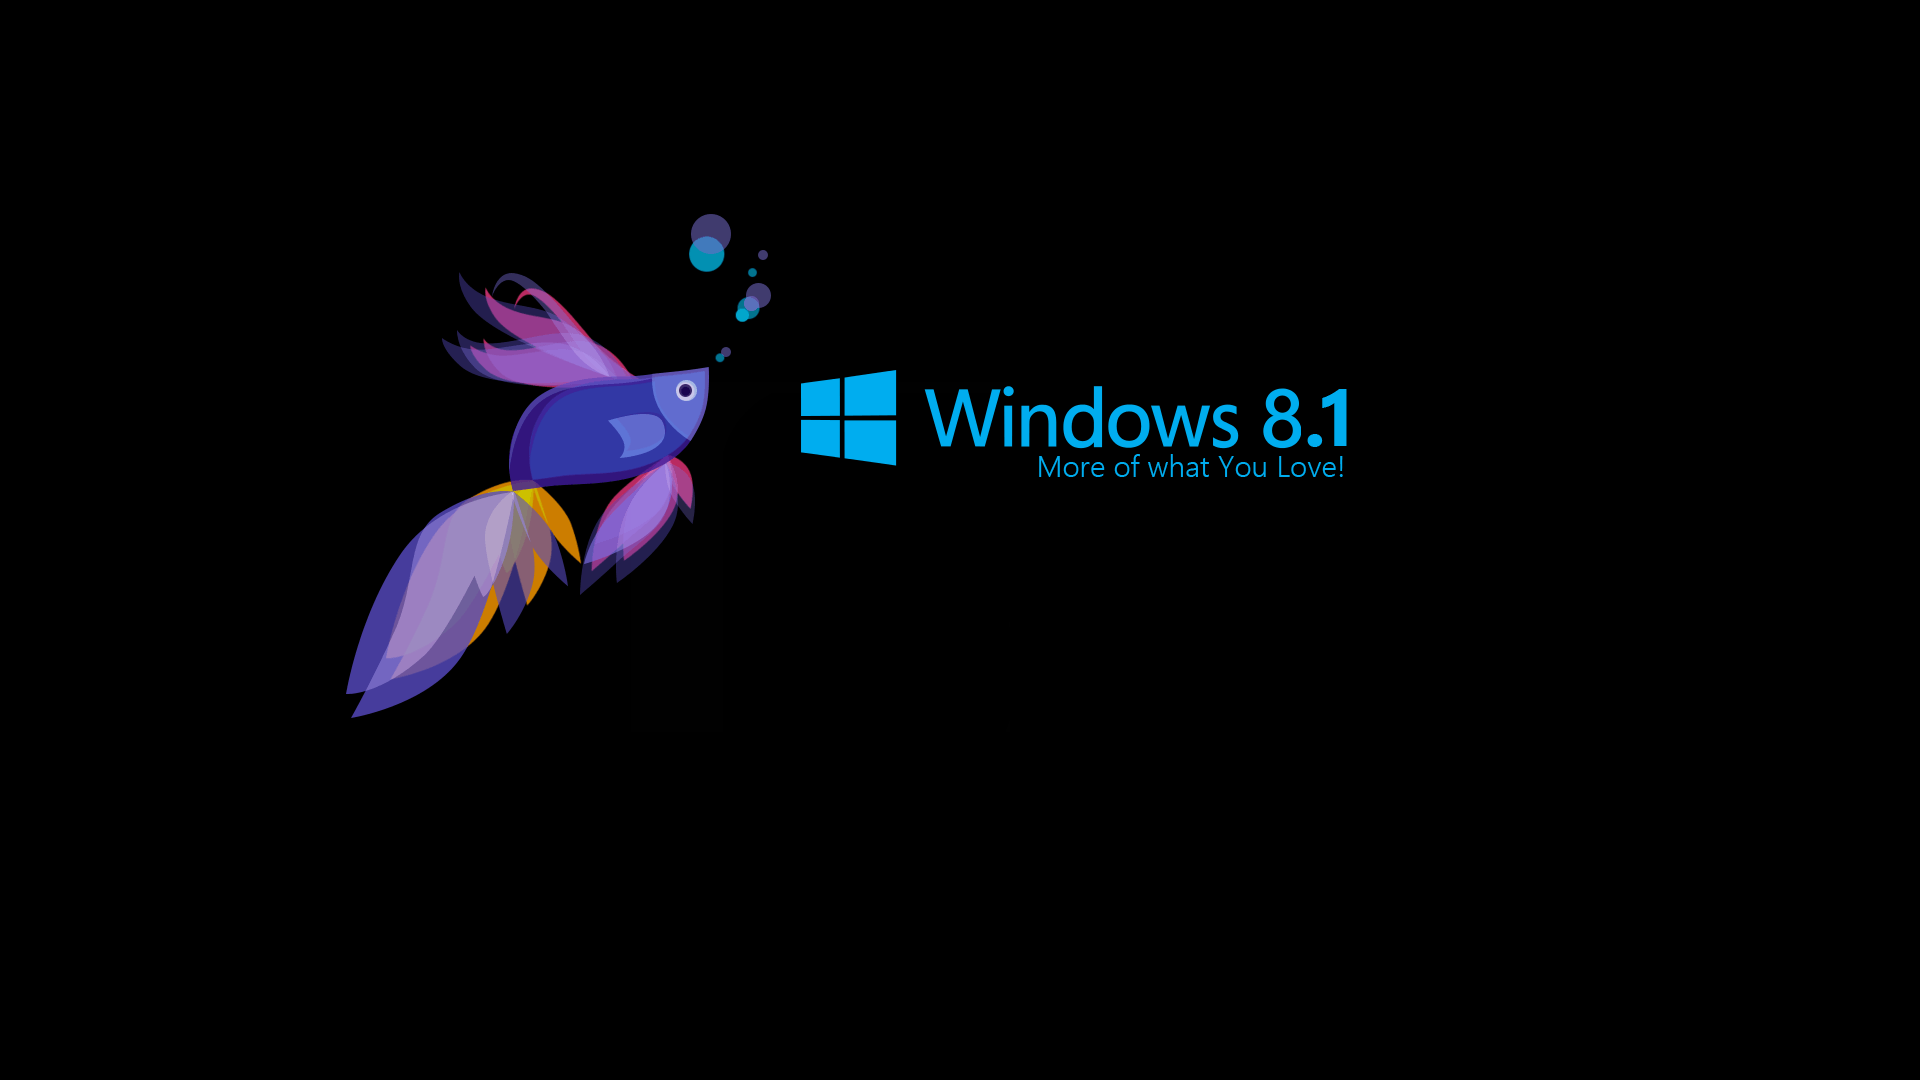 Hình nền Windows 8 HD mới nhất - daotaonec: Bạn muốn làm mới giao diện máy tính của mình với những hình nền chất lượng cao? Daotaonec cung cấp những hình nền Windows 8 HD mới nhất với đủ độ phân giải. Không chỉ đẹp mắt mà còn tương thích với nhiều loại máy tính khác nhau. Tải ngay hôm nay để trải nghiệm!